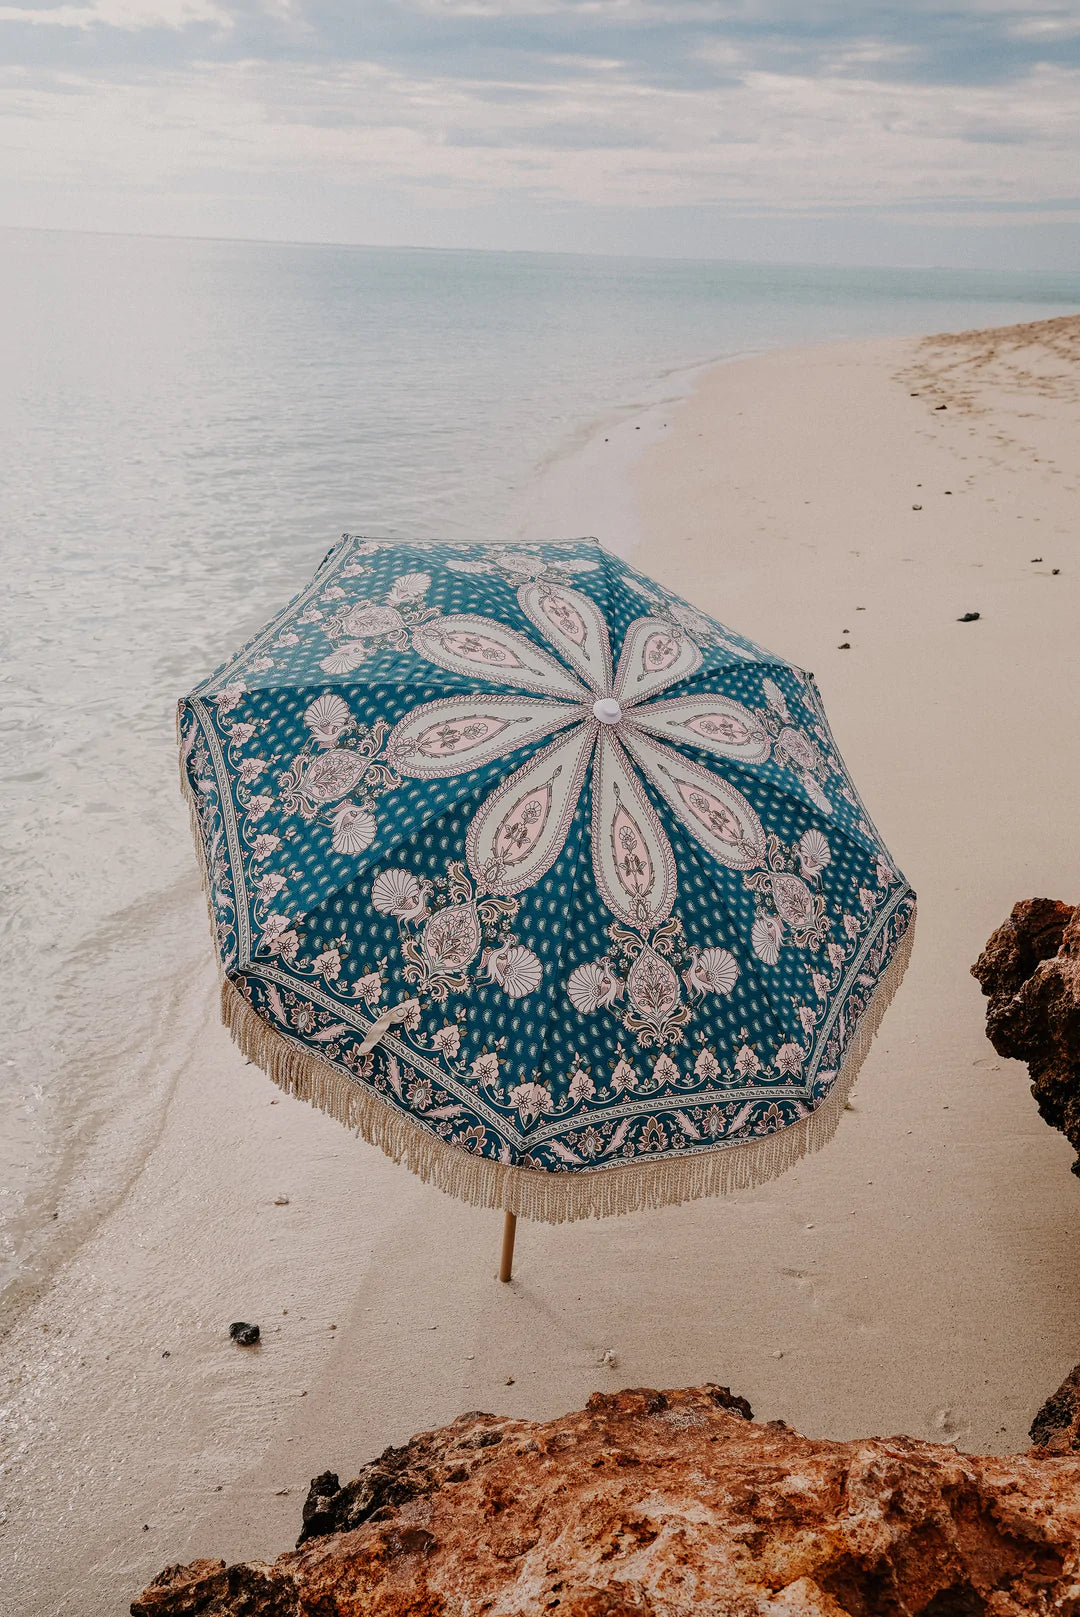 Salty Shadows Lady Beach Umbrella